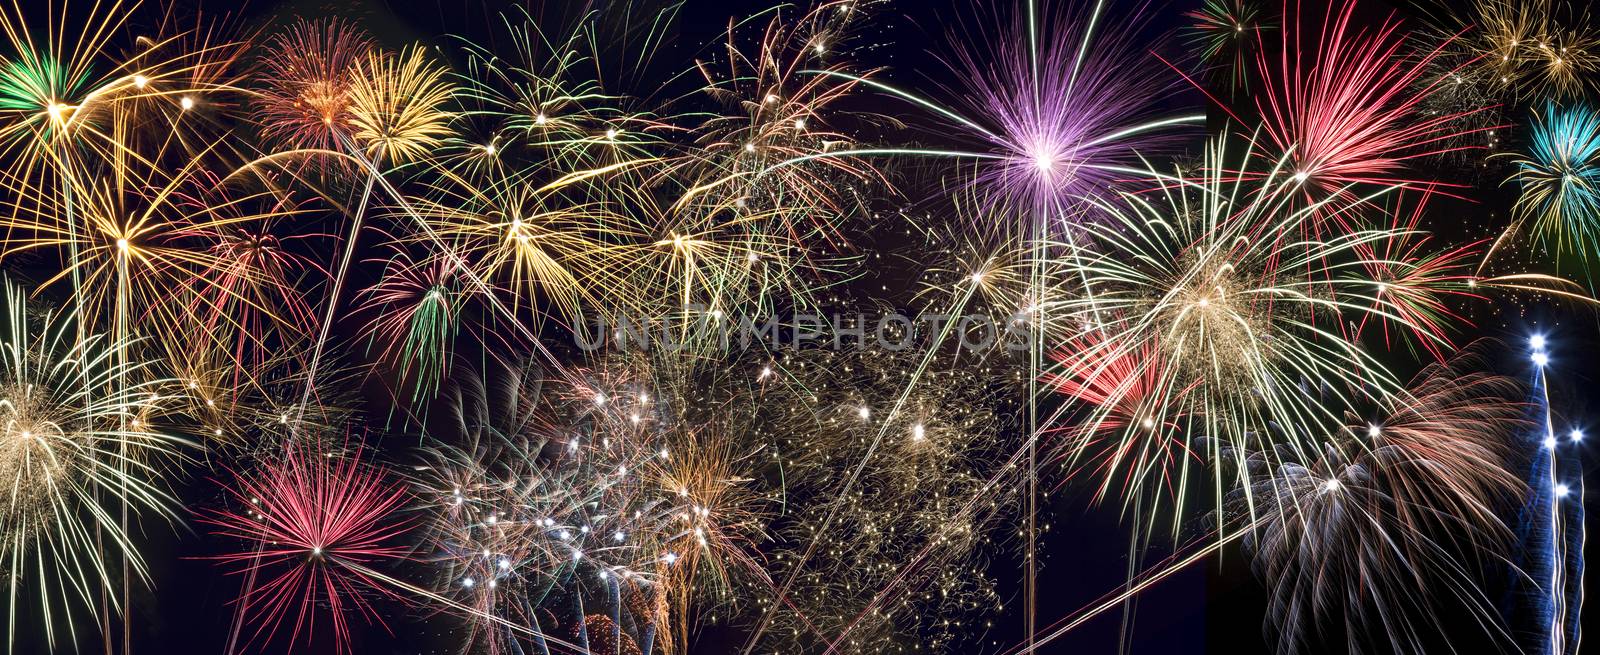 Celebrations - Fireworks Display - website header panel